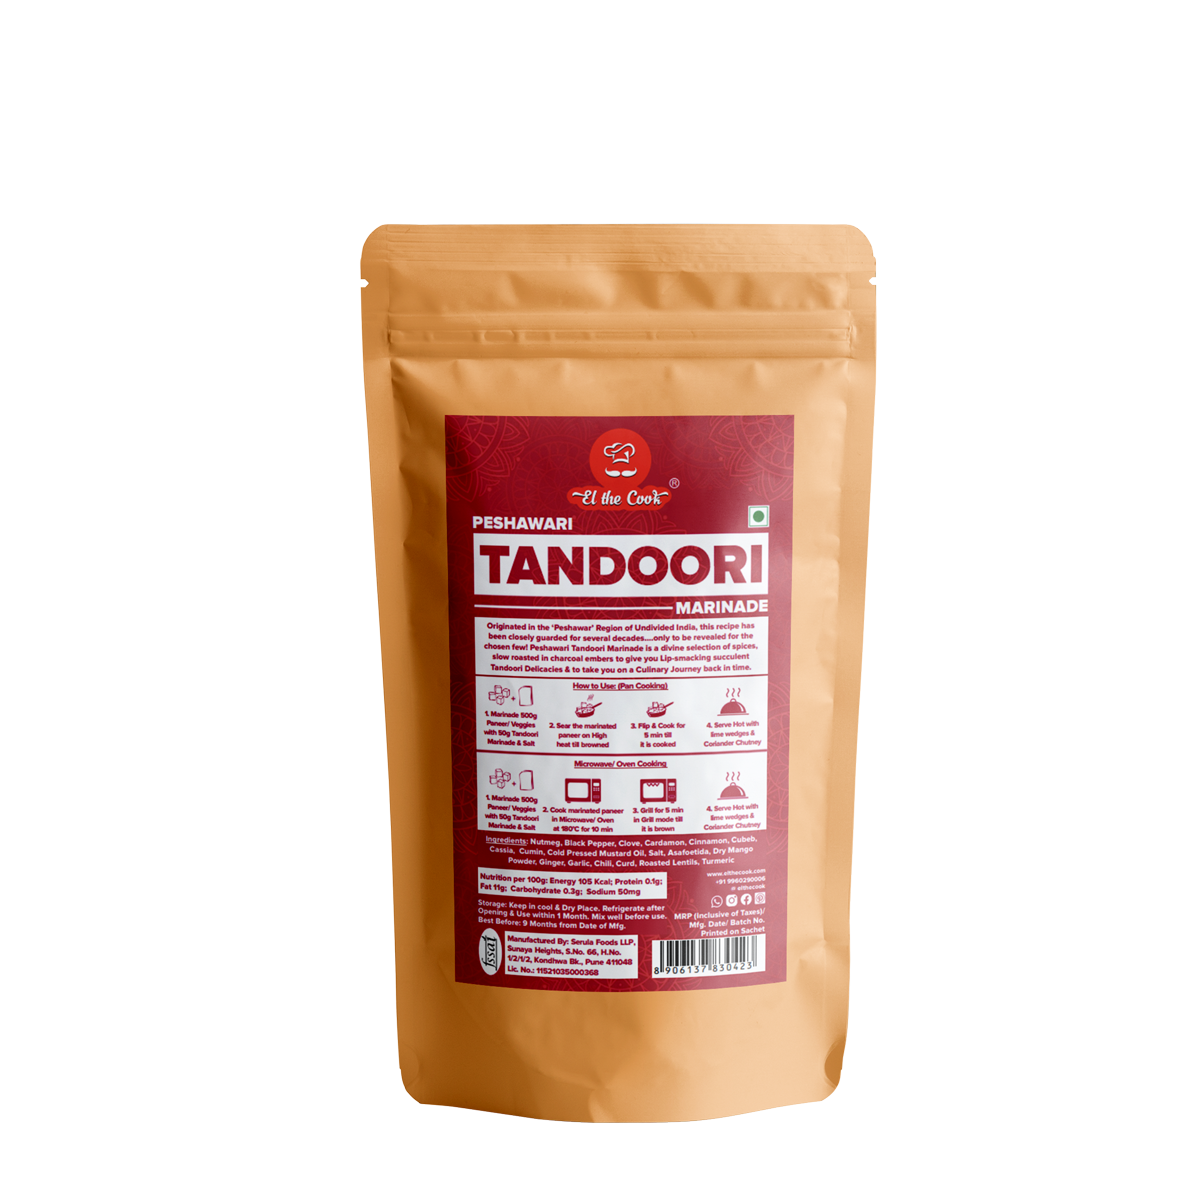 Tandoori Veg Paste 50g x 2 Pack